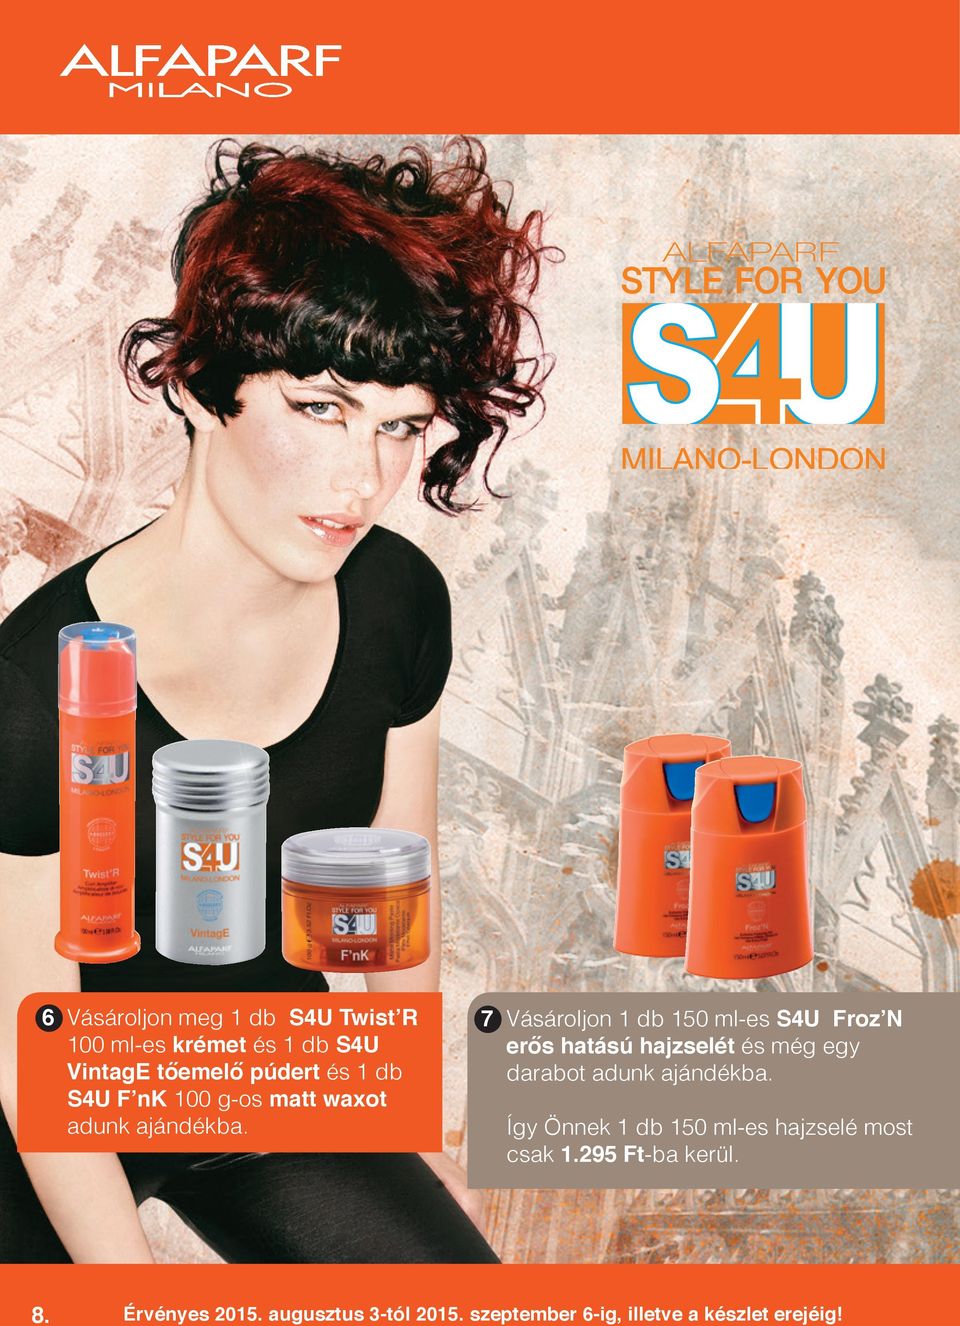 7 Vásároljon 1 db 150 ml-es S4U Froz N erős hatású hajzselét és még egy darabot adunk ajándékba.